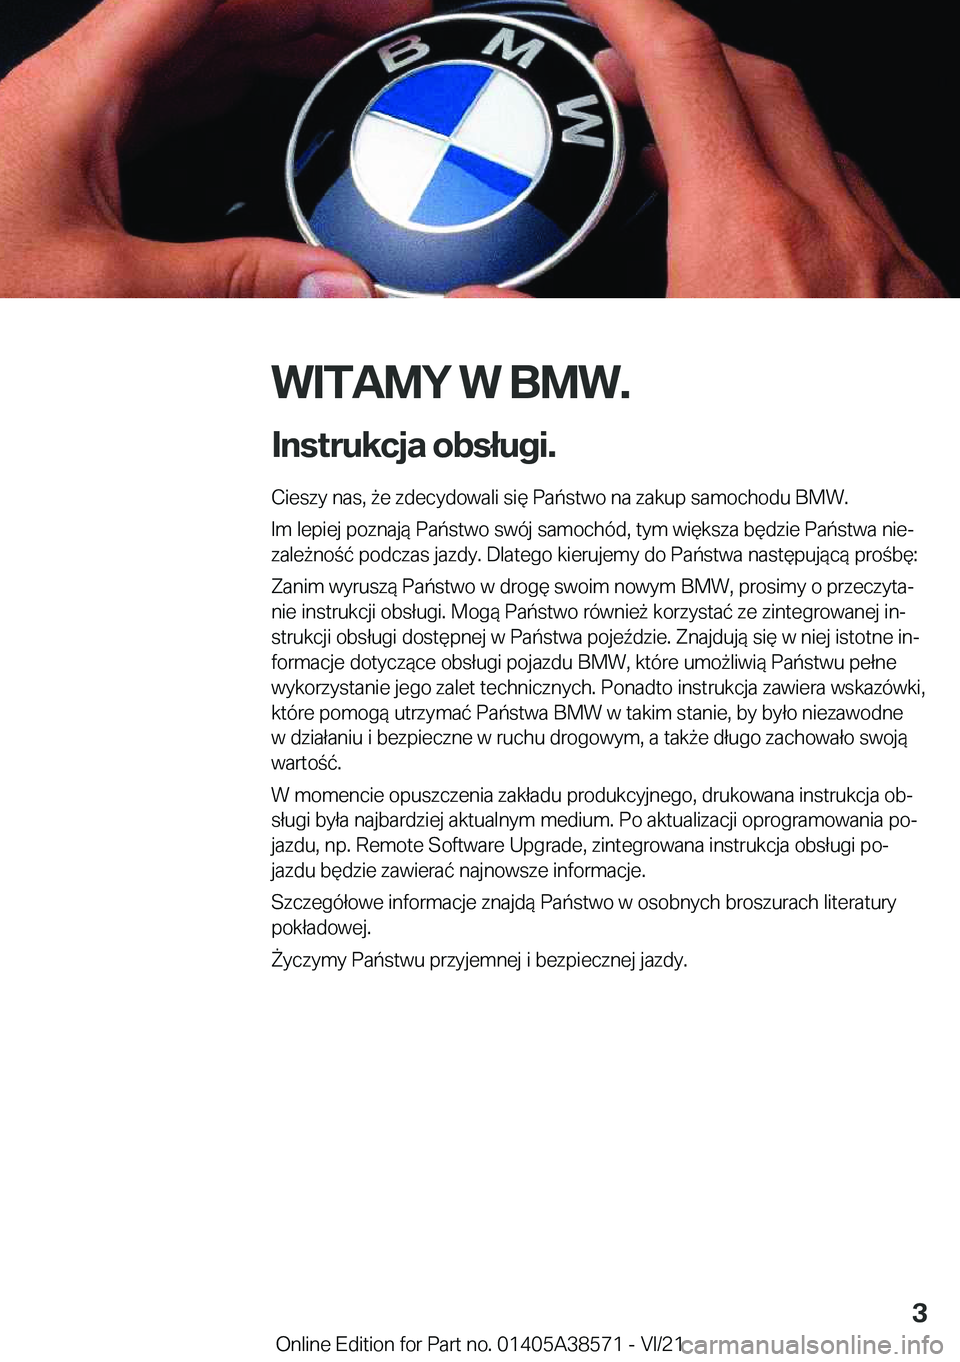 BMW X6 2022  Instrukcja obsługi (in Polish) �W�I�T�A�M�Y��W��B�M�W�.
�I�n�s�t�r�u�k�c�j�a��o�b�s�ł�u�g�i�. �C�i�e�s�z�y��n�a�s�,�9�e��z�d�e�c�y�d�o�w�a�l�i��s�i�